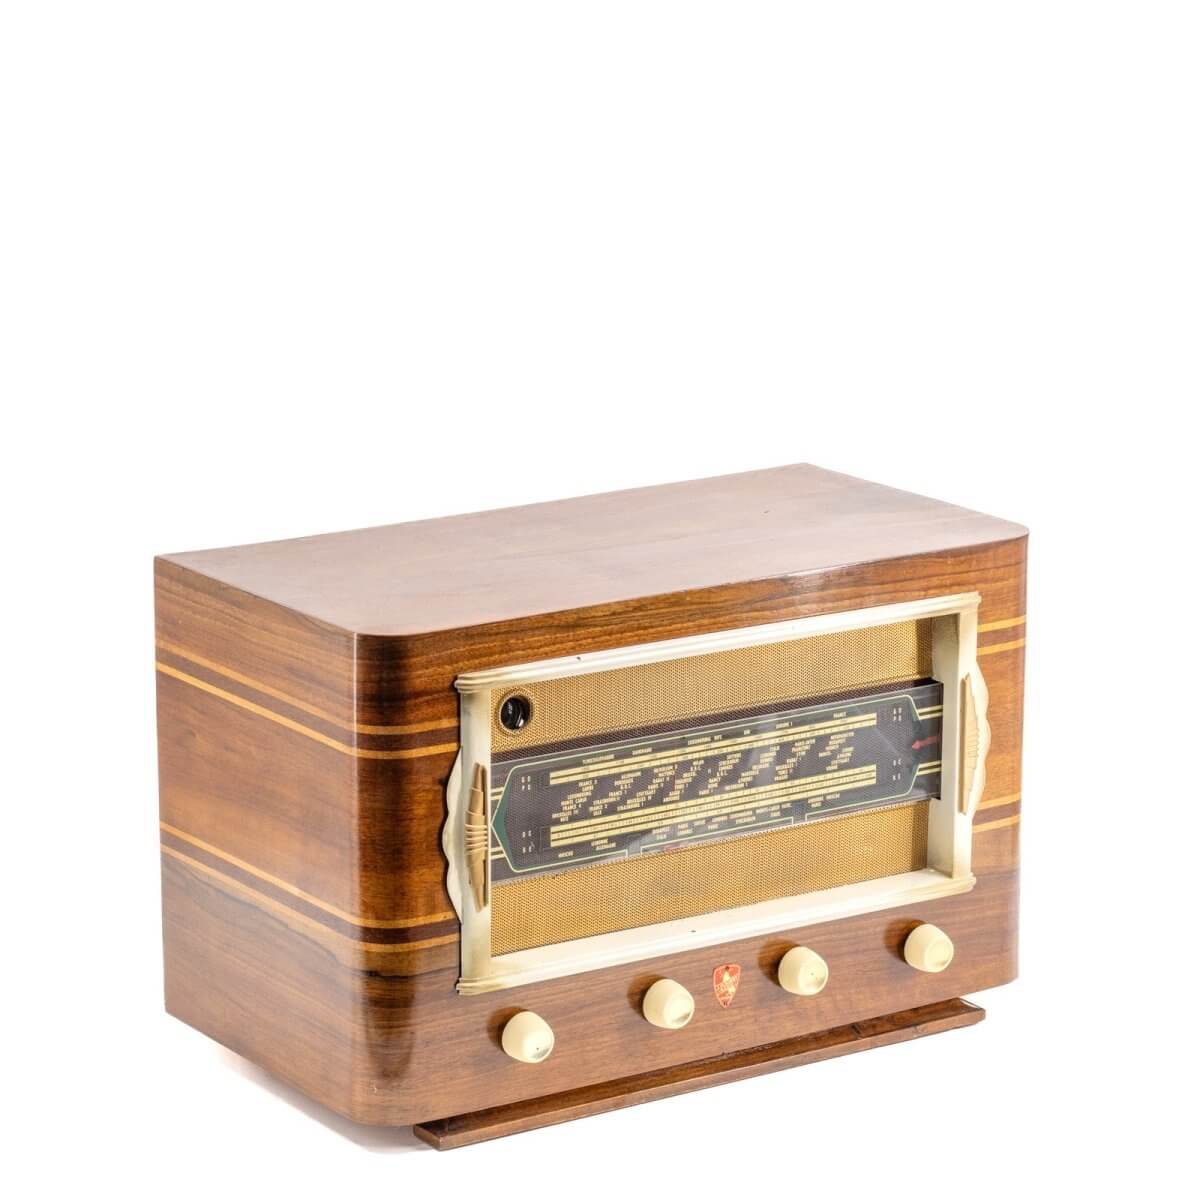 Radio Bluetooth Fleriet Vintage 40’S-A.bsolument-enceintes-et-radios-vintage-bluetooth